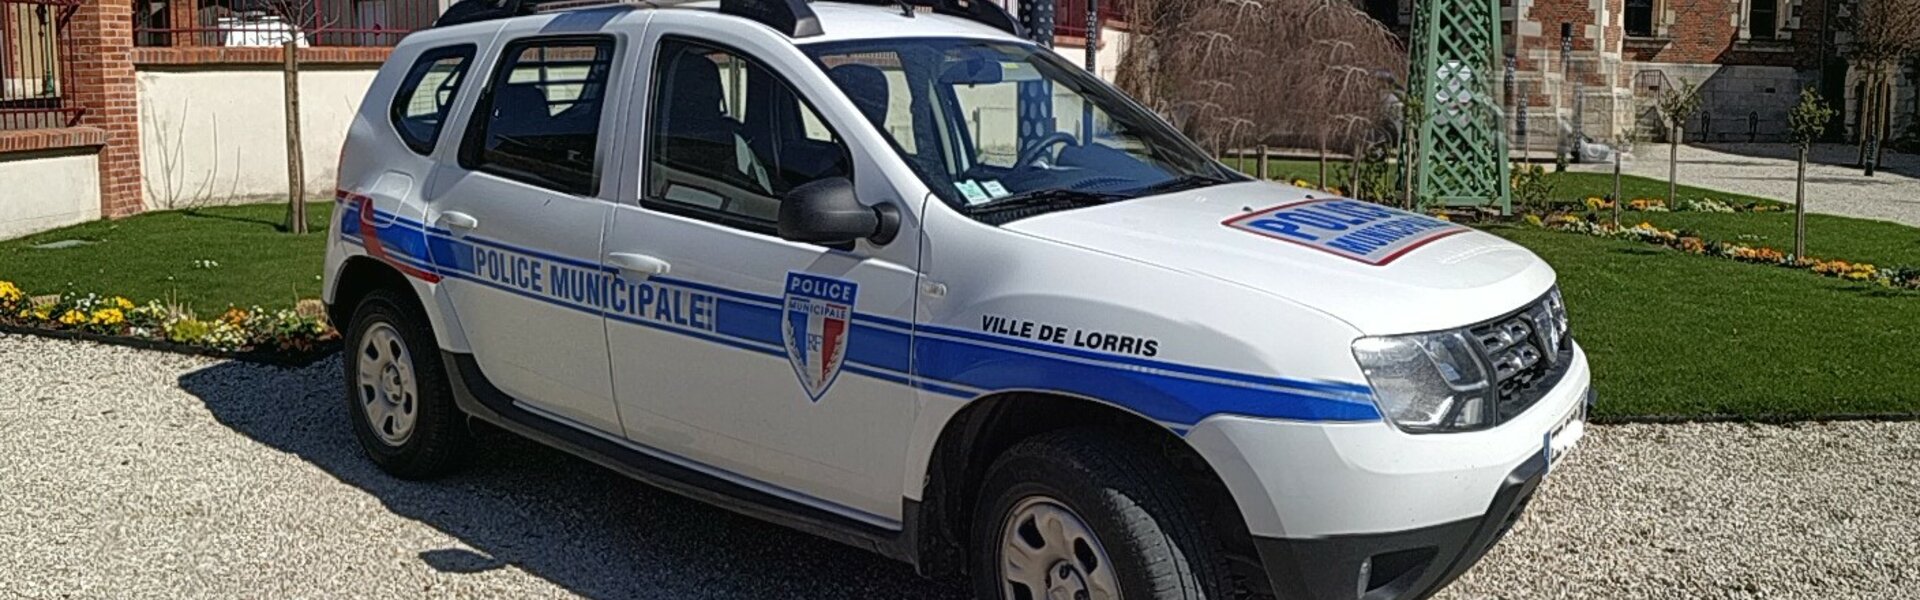 Police municipale de Lorris